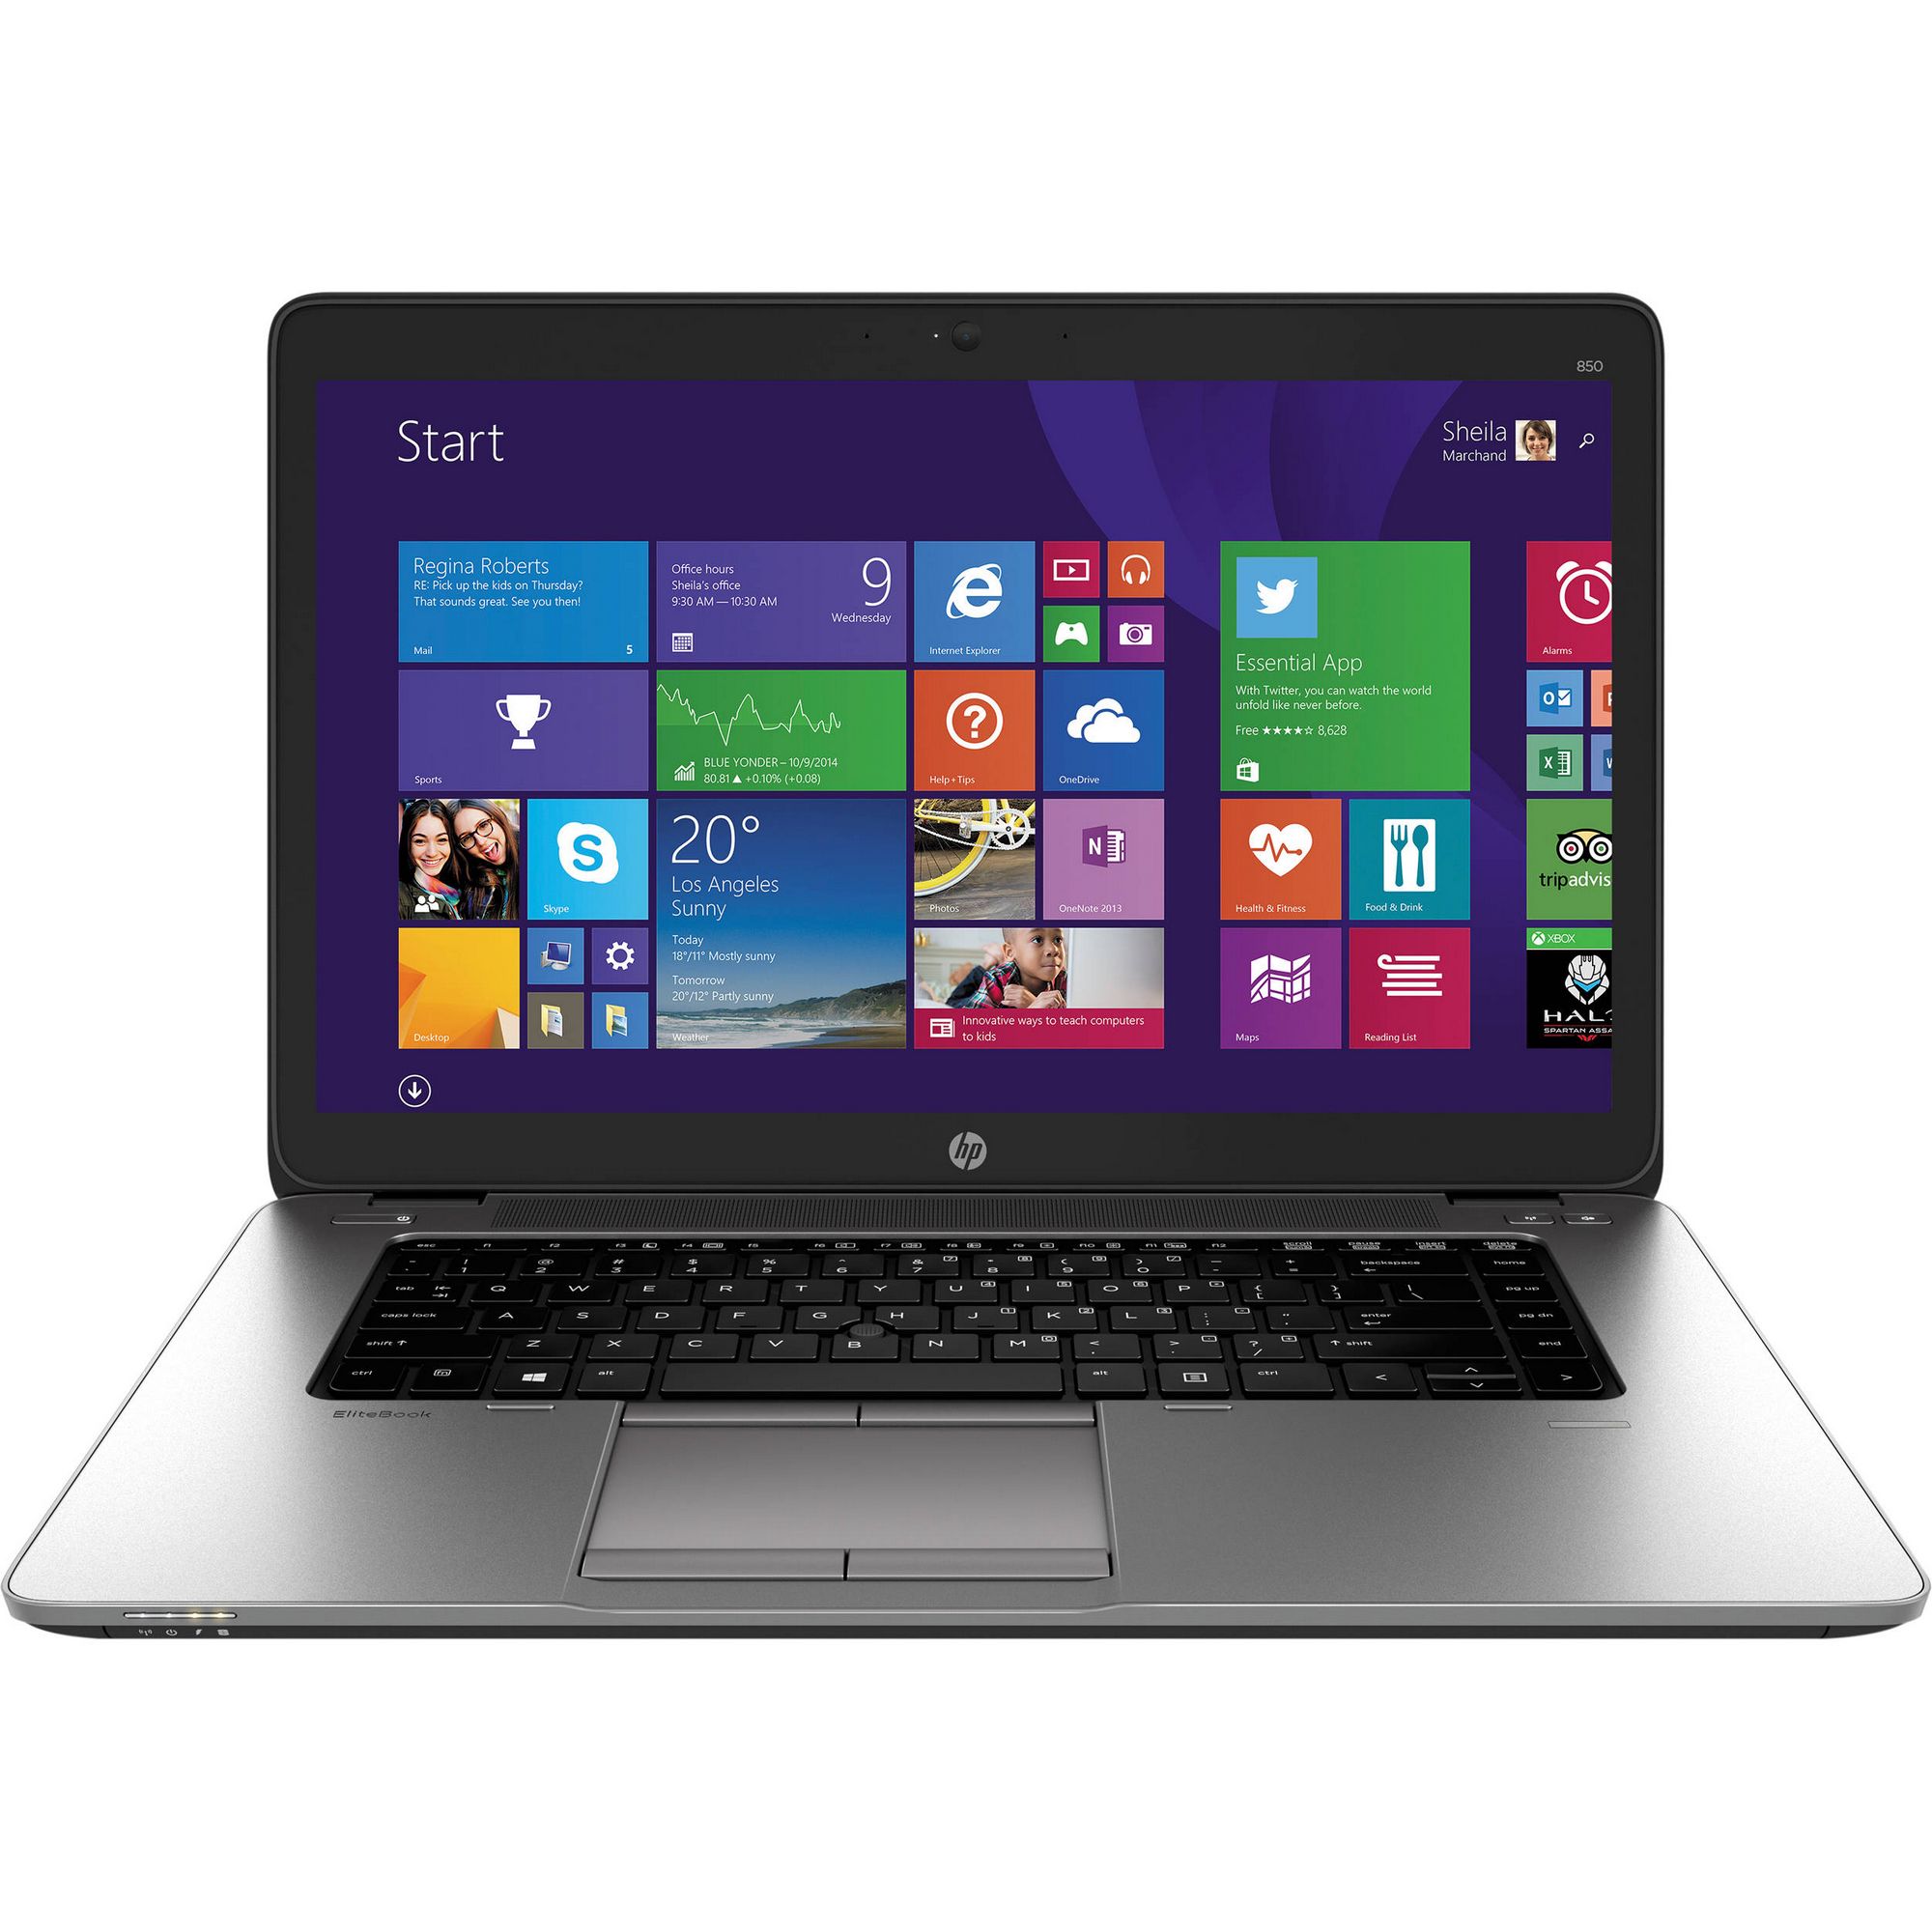  Laptop HP EliteBook 850 G2, Intel Core i7-5500U, 8GB DDR3, SSD 256GB, AMD Radeon R7 M260X 1GB, Windows 8.1 Pro 